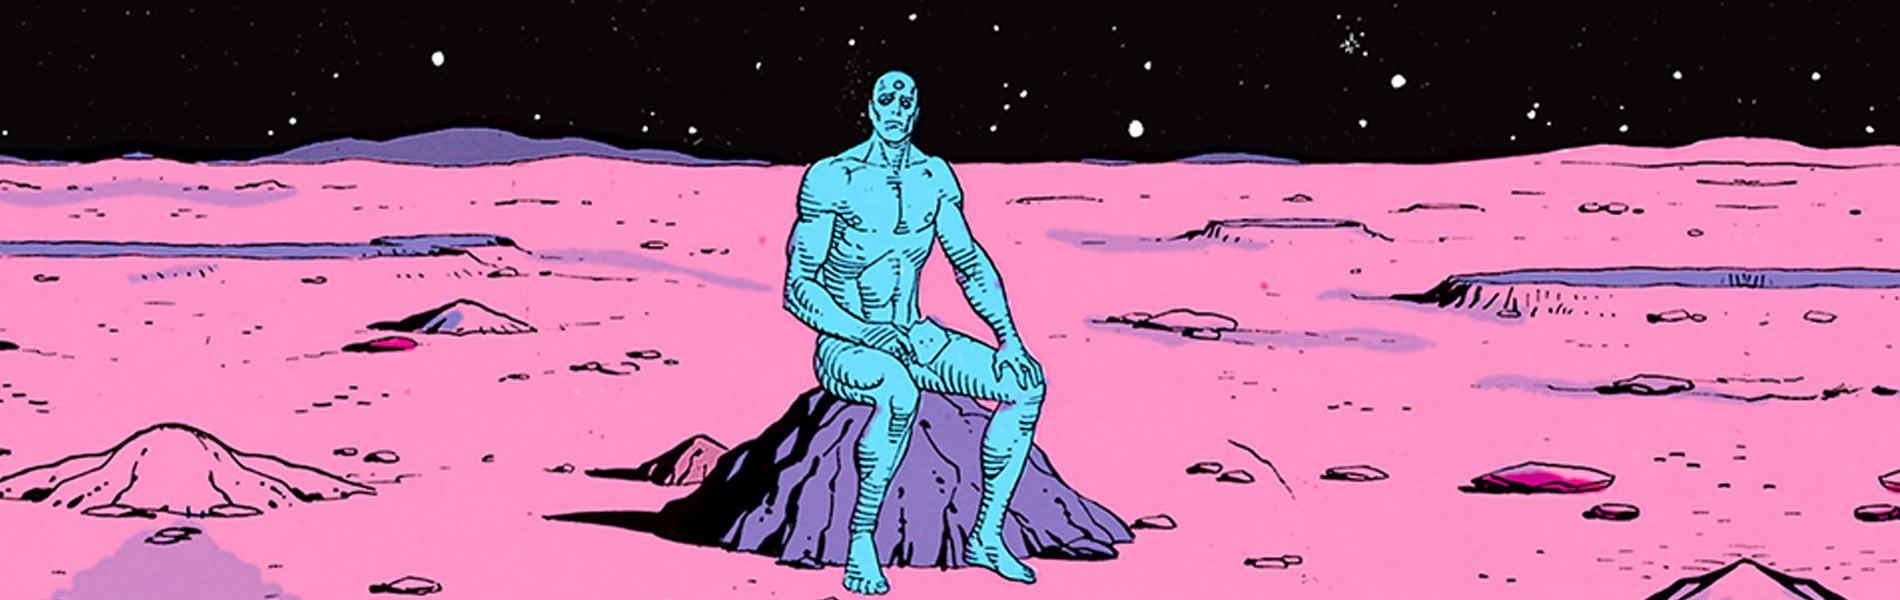 God of Comics – Watchmen